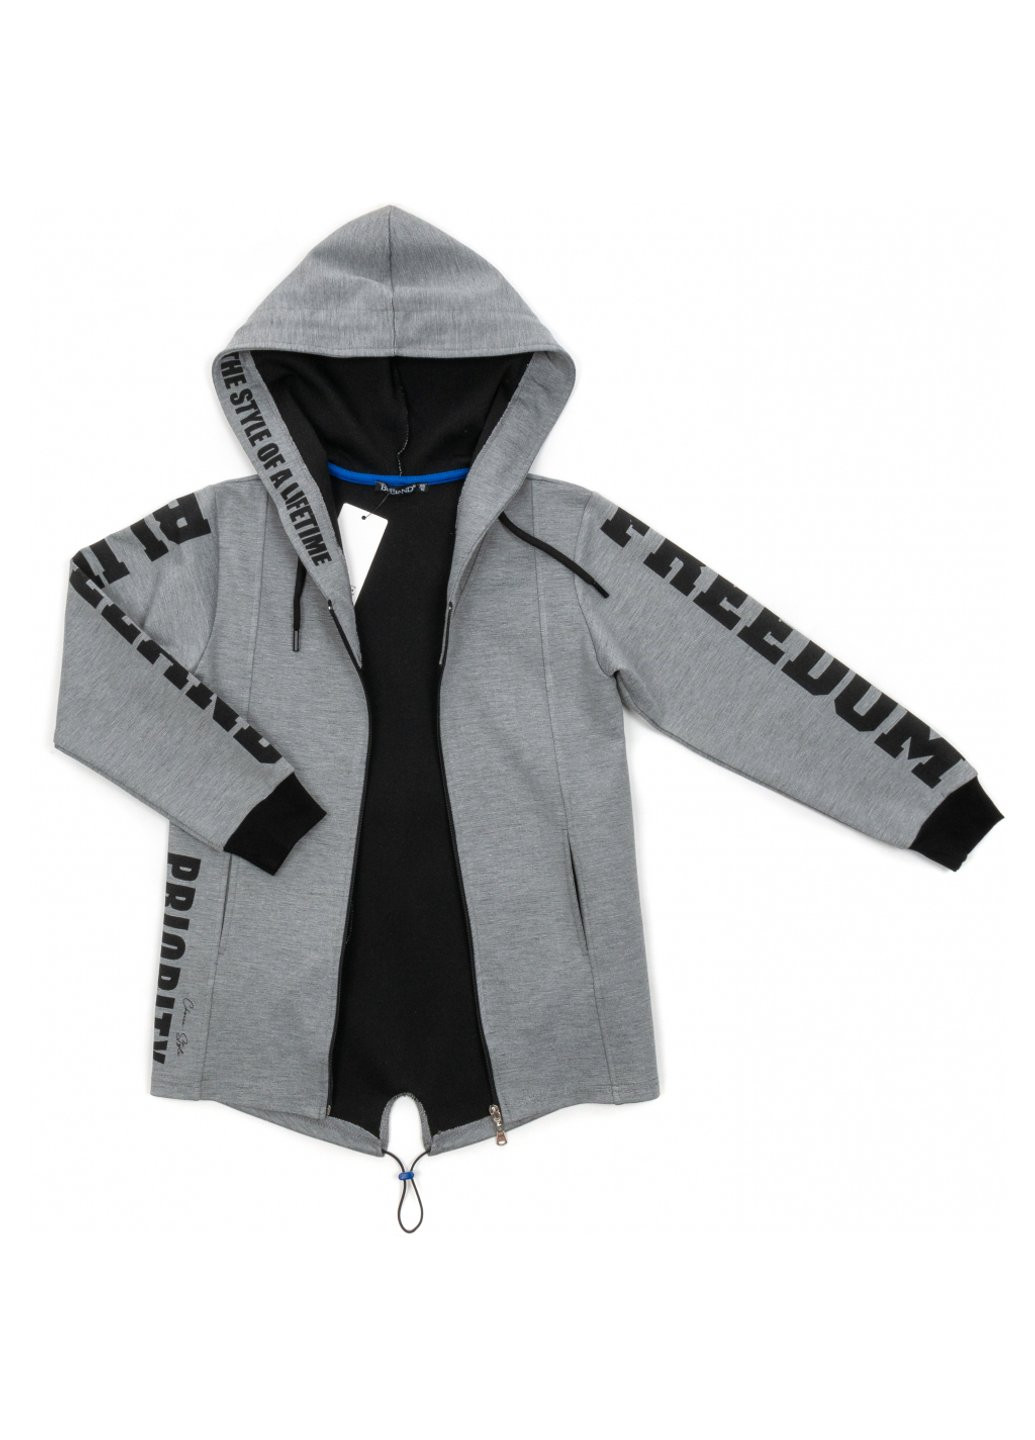 Серая демисезонная куртка ветровка с капюшоном (10760-146b-gray) BLUELAND